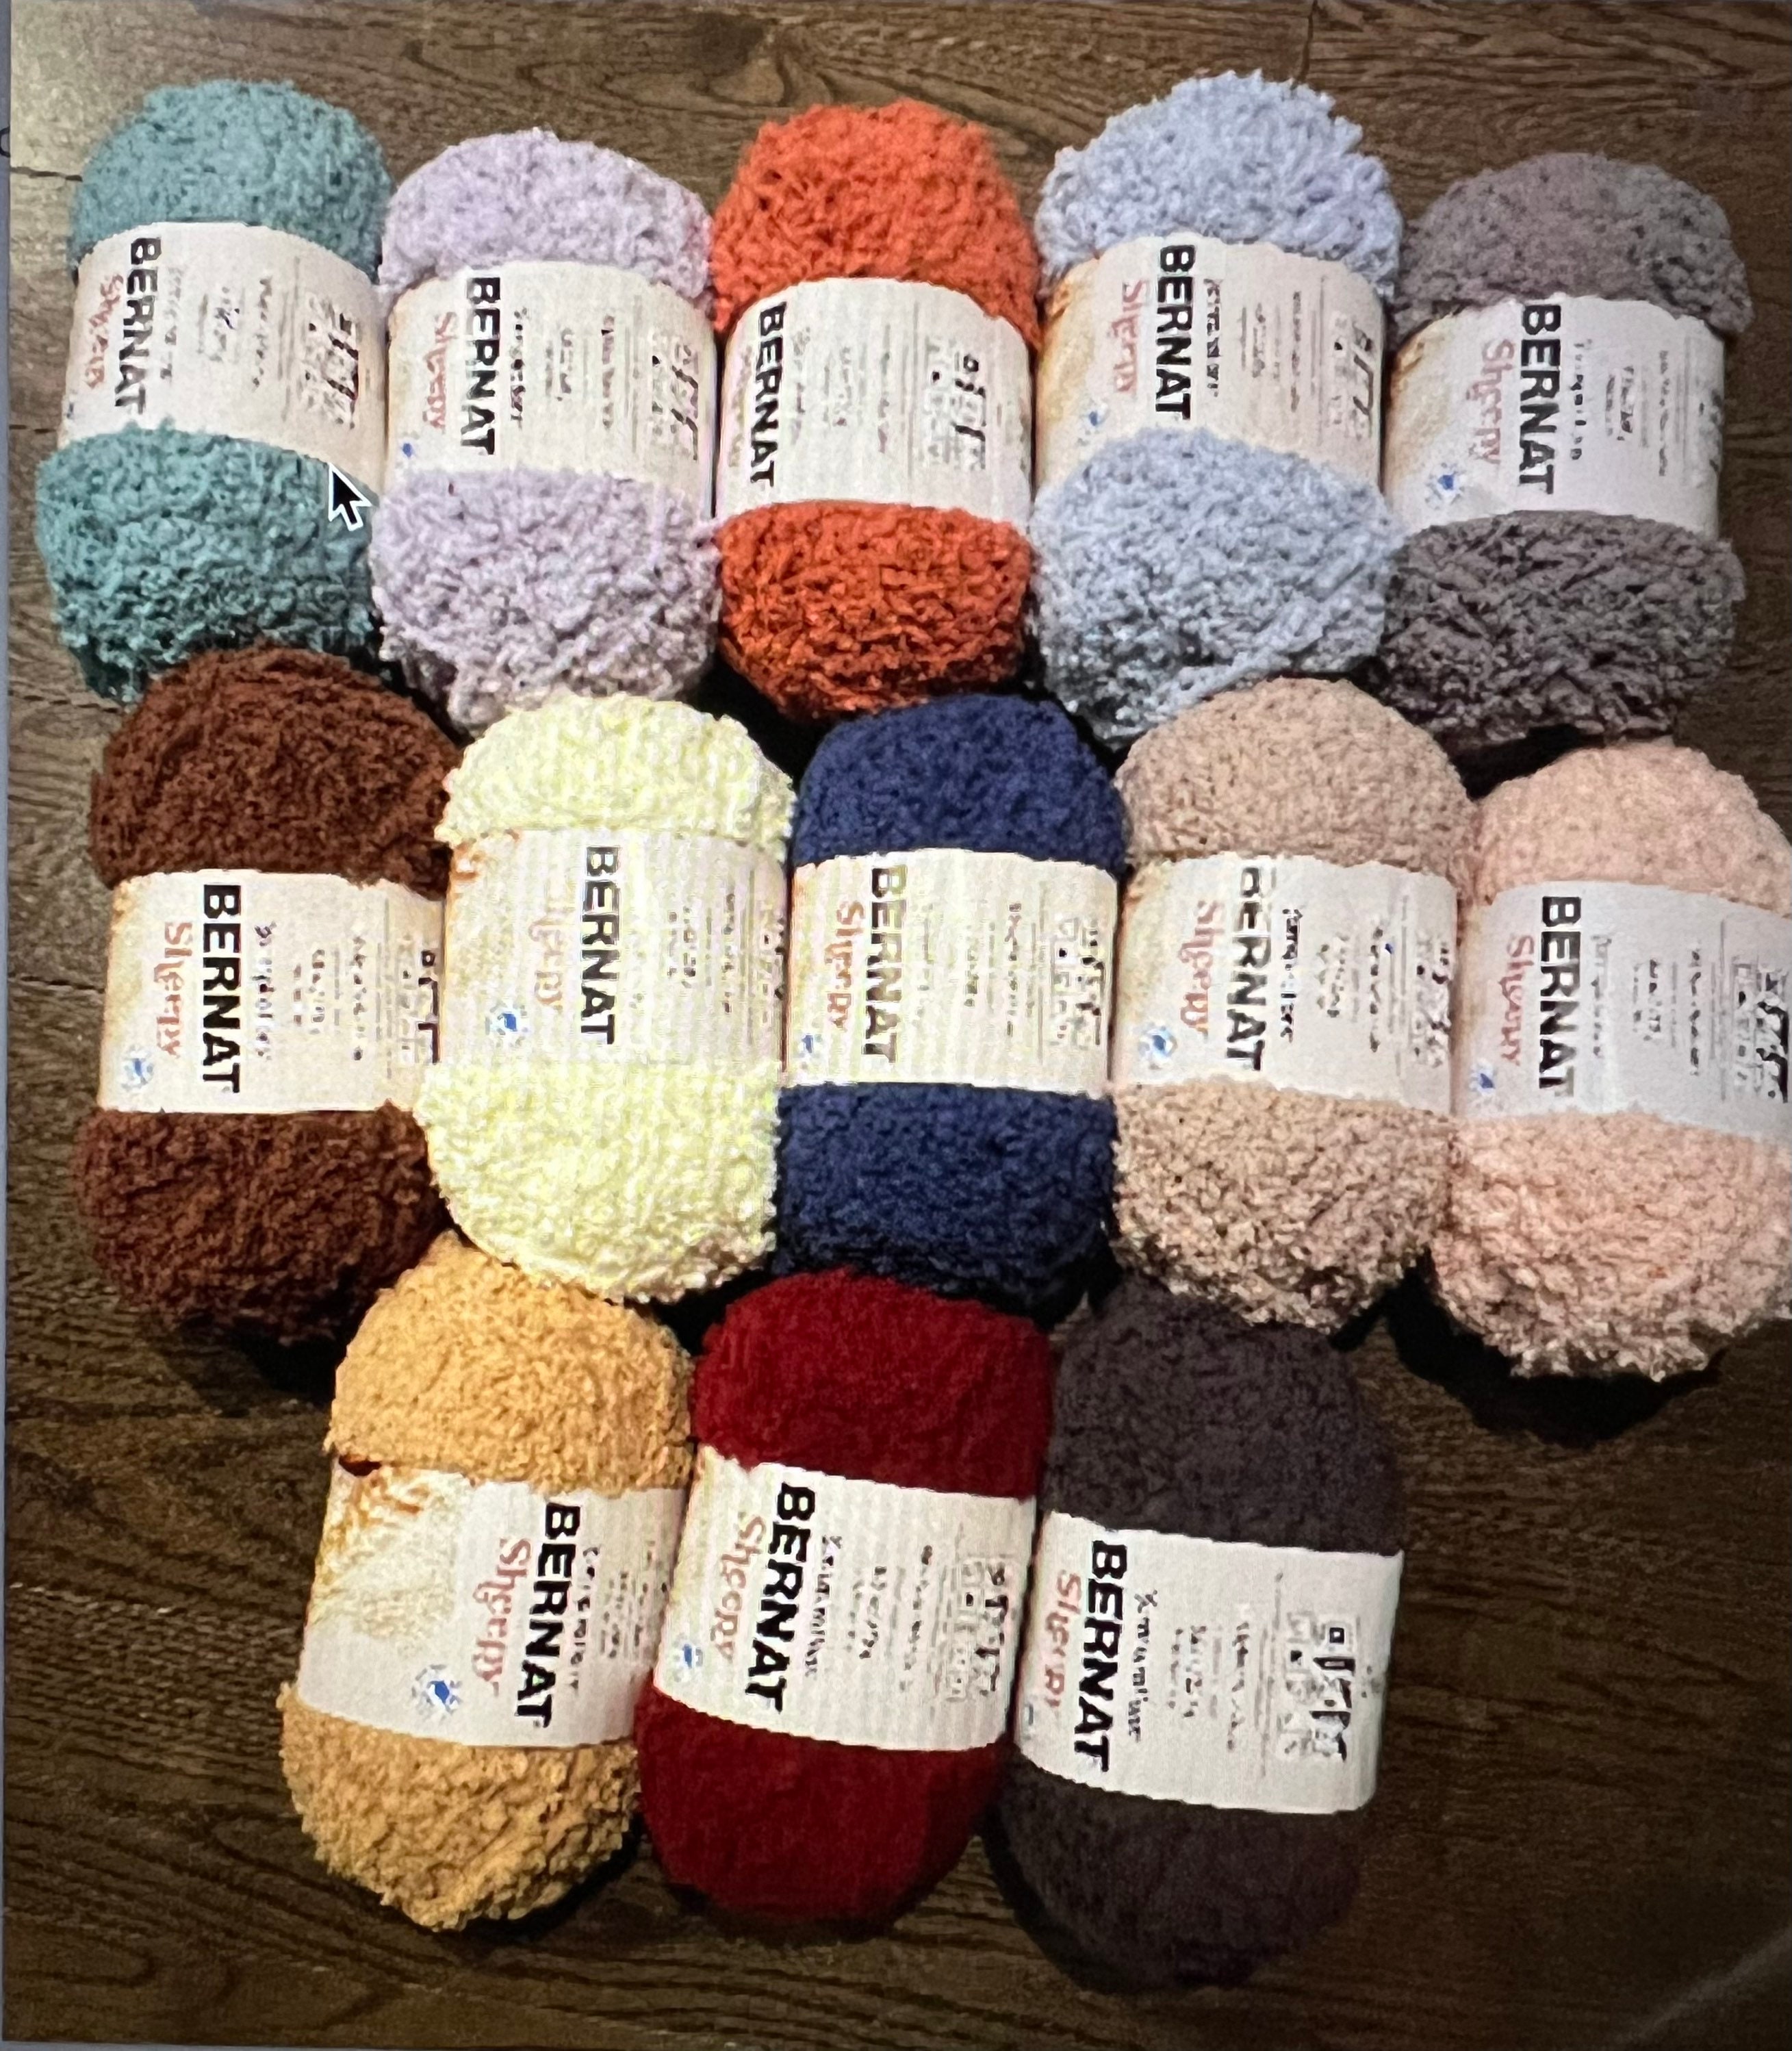 Bernat Velvet Plus Harvest Green 10.5 oz Knitting & Crochet Yarn